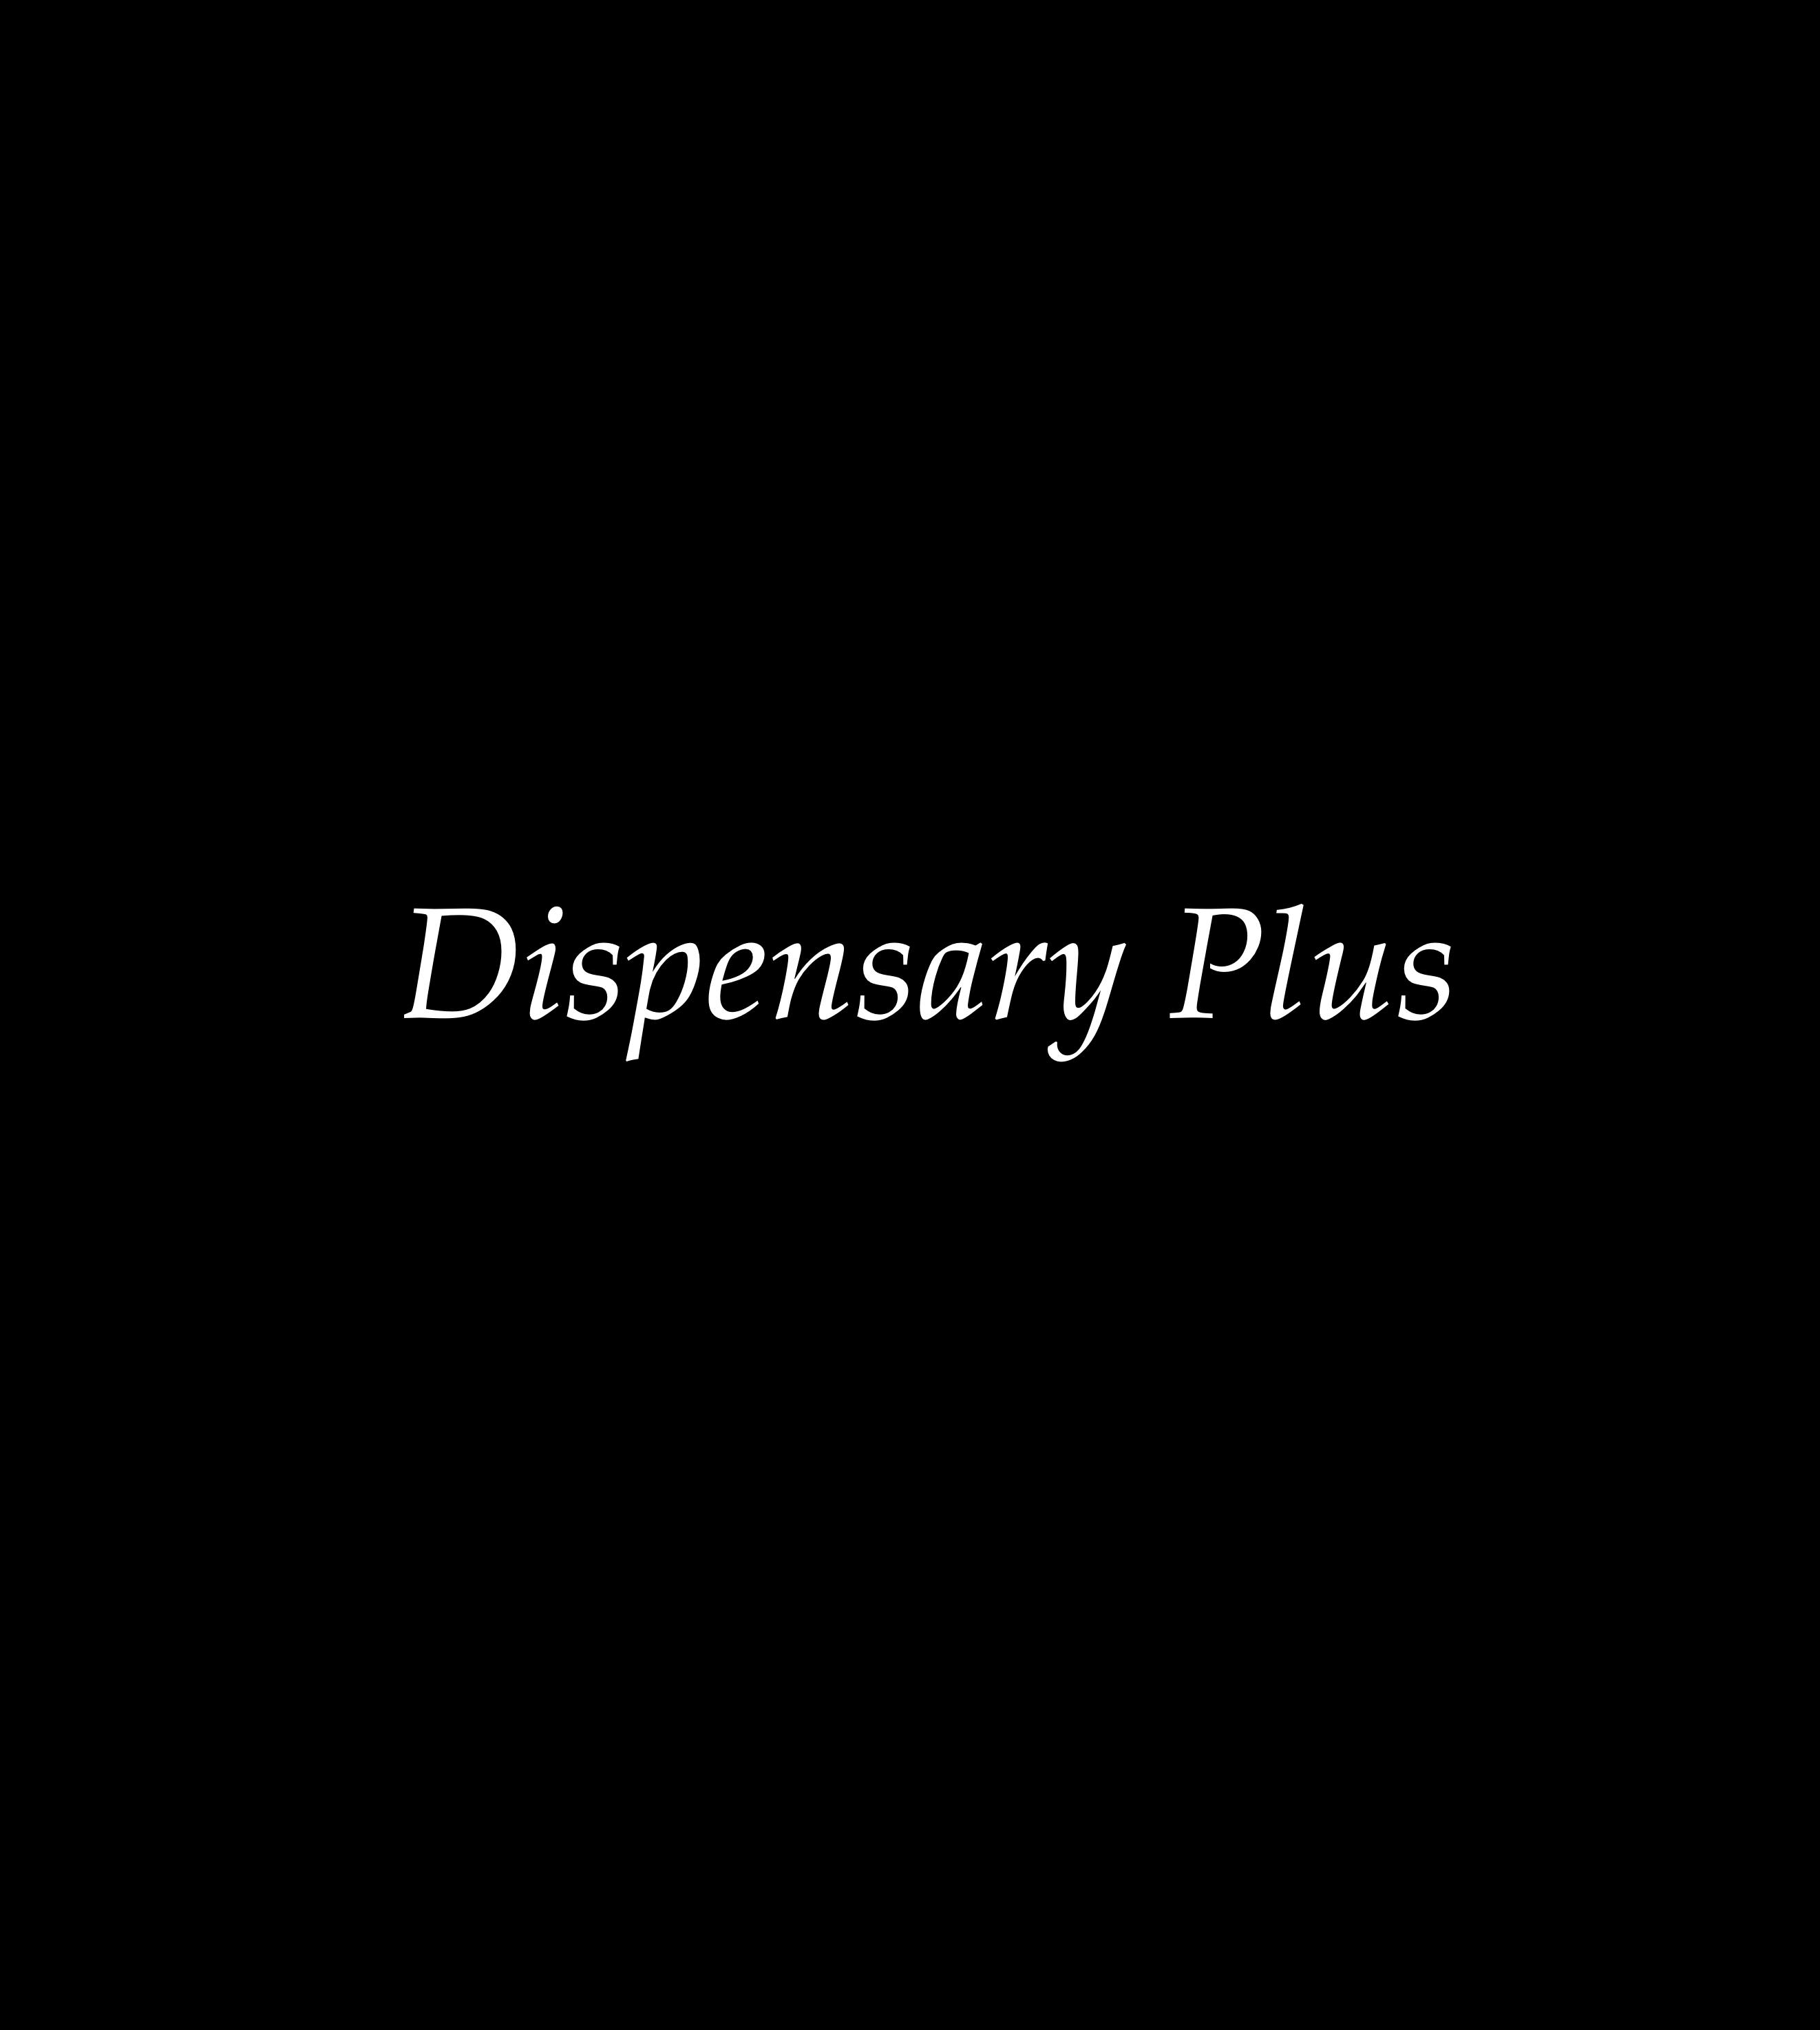 Dispensary plus logo